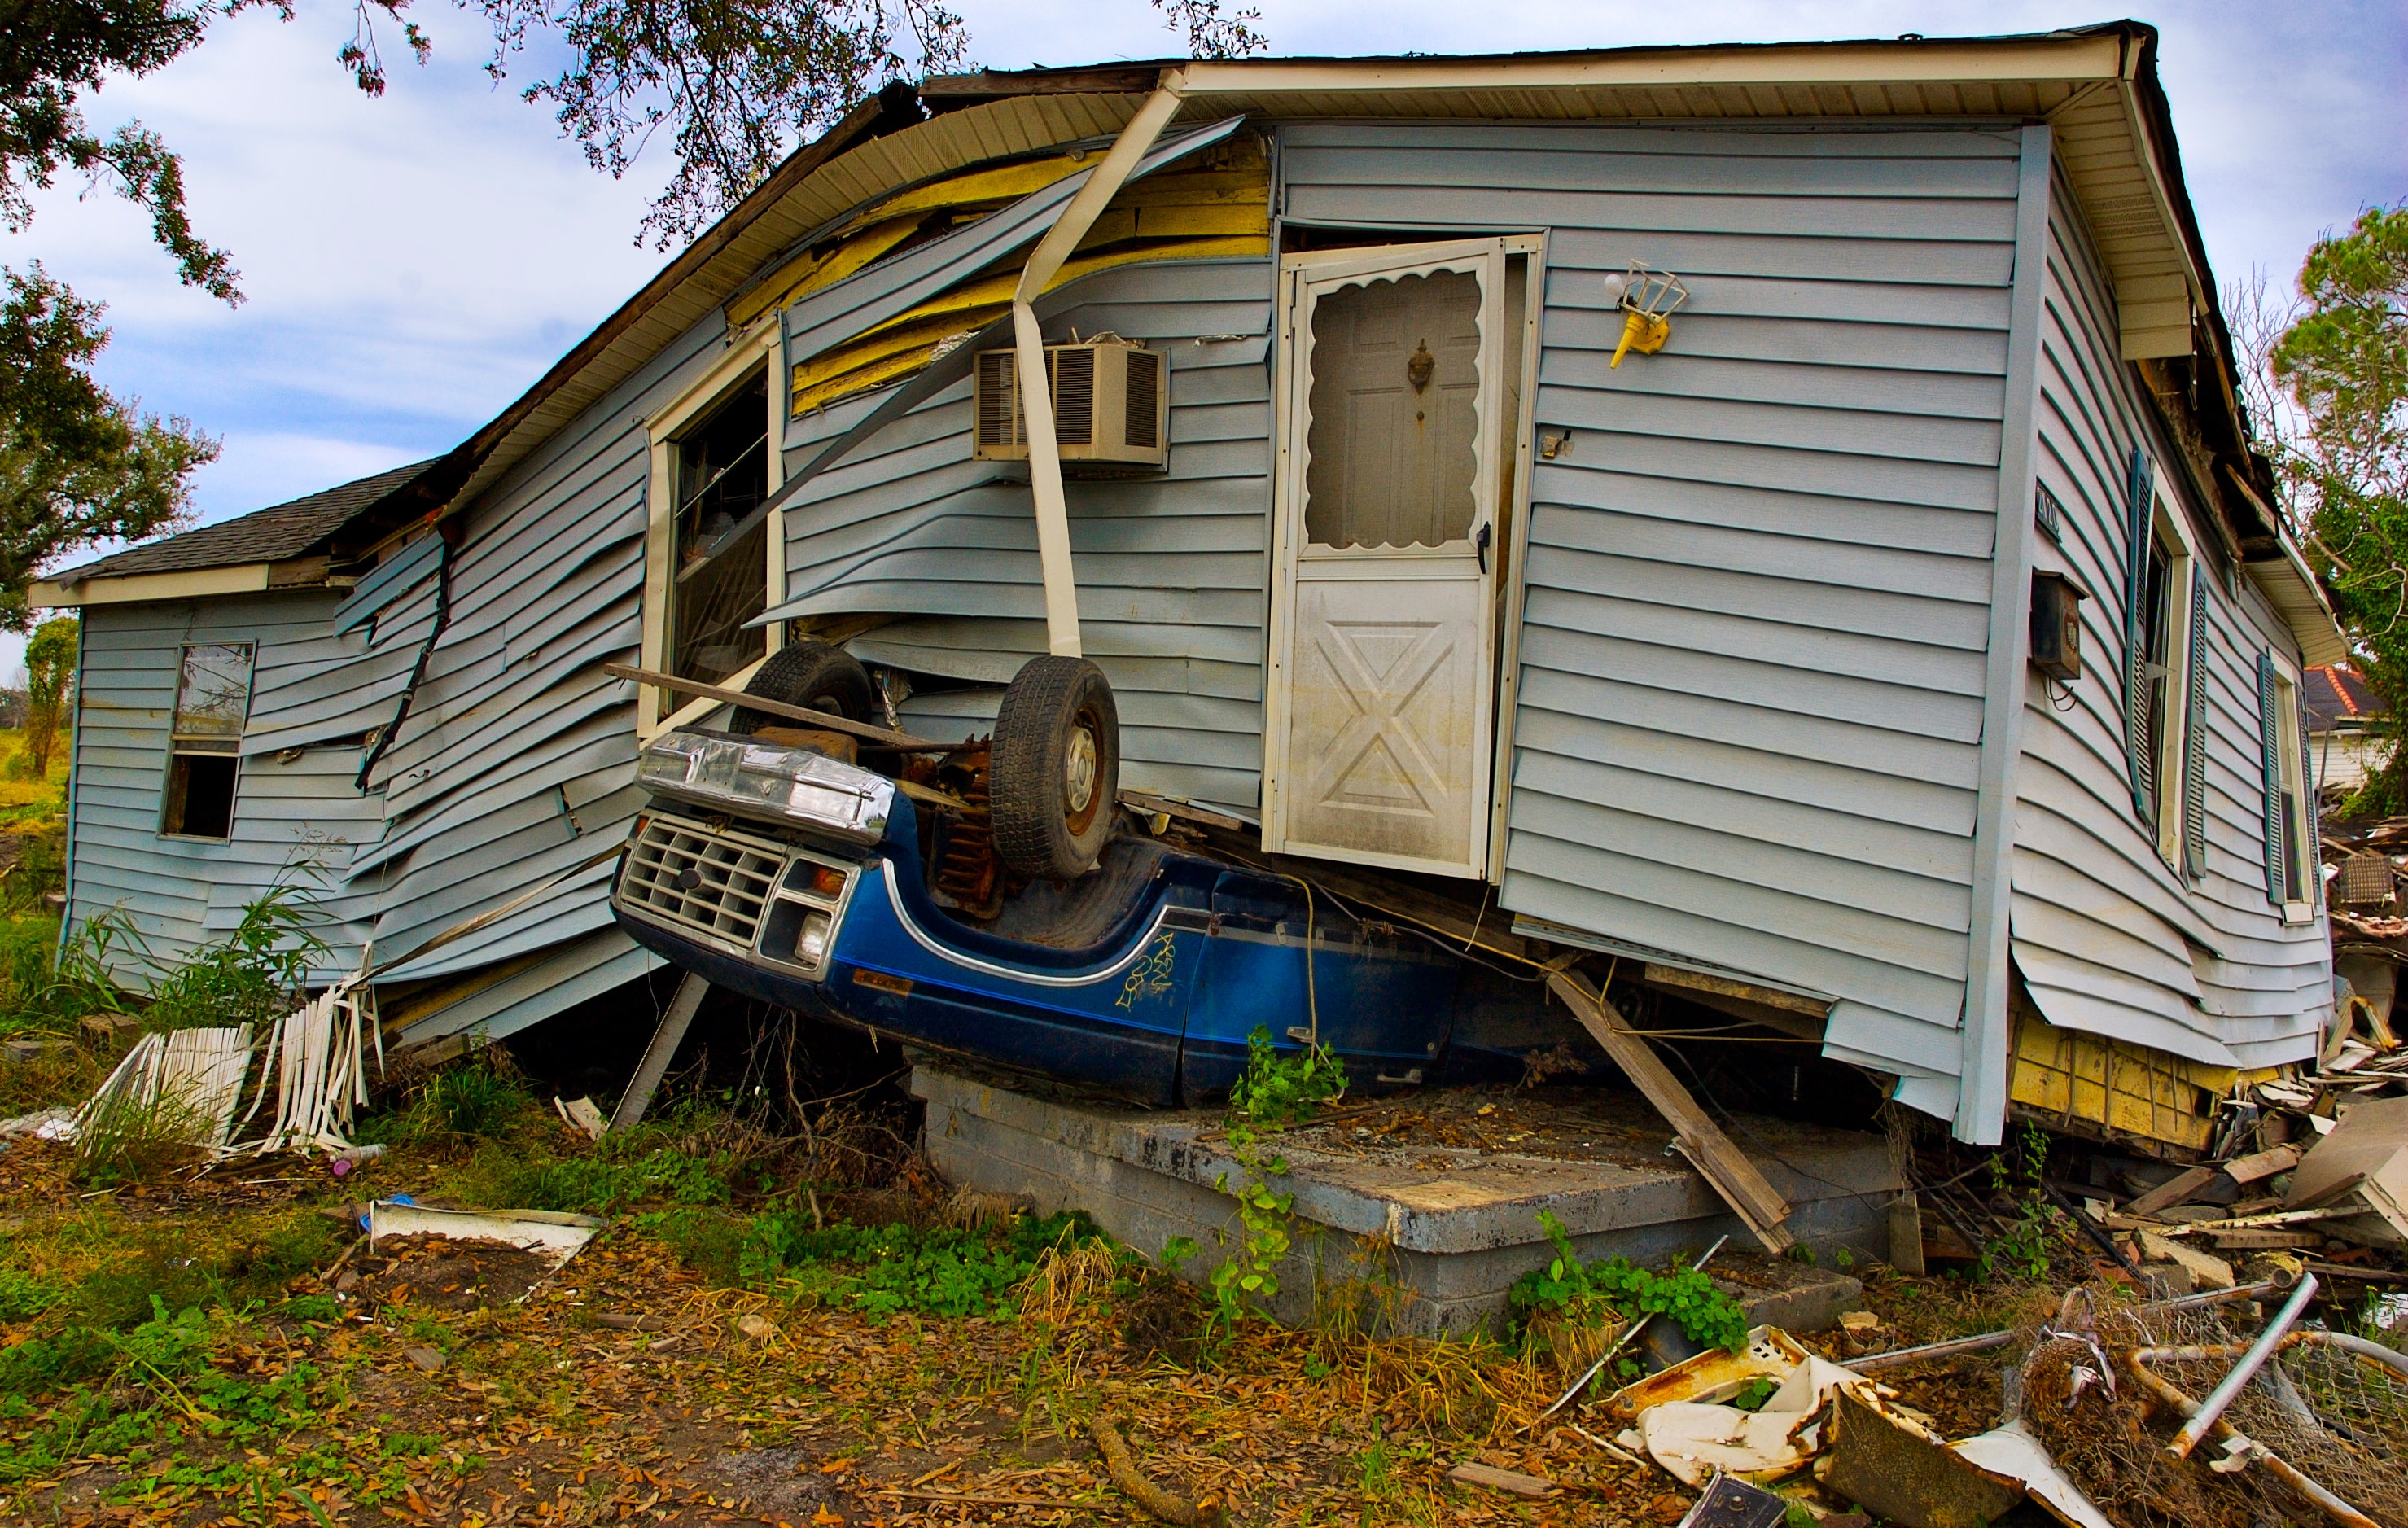 House on top of overturned vehicle; image by John Middelkoop, via Unsplash.com.